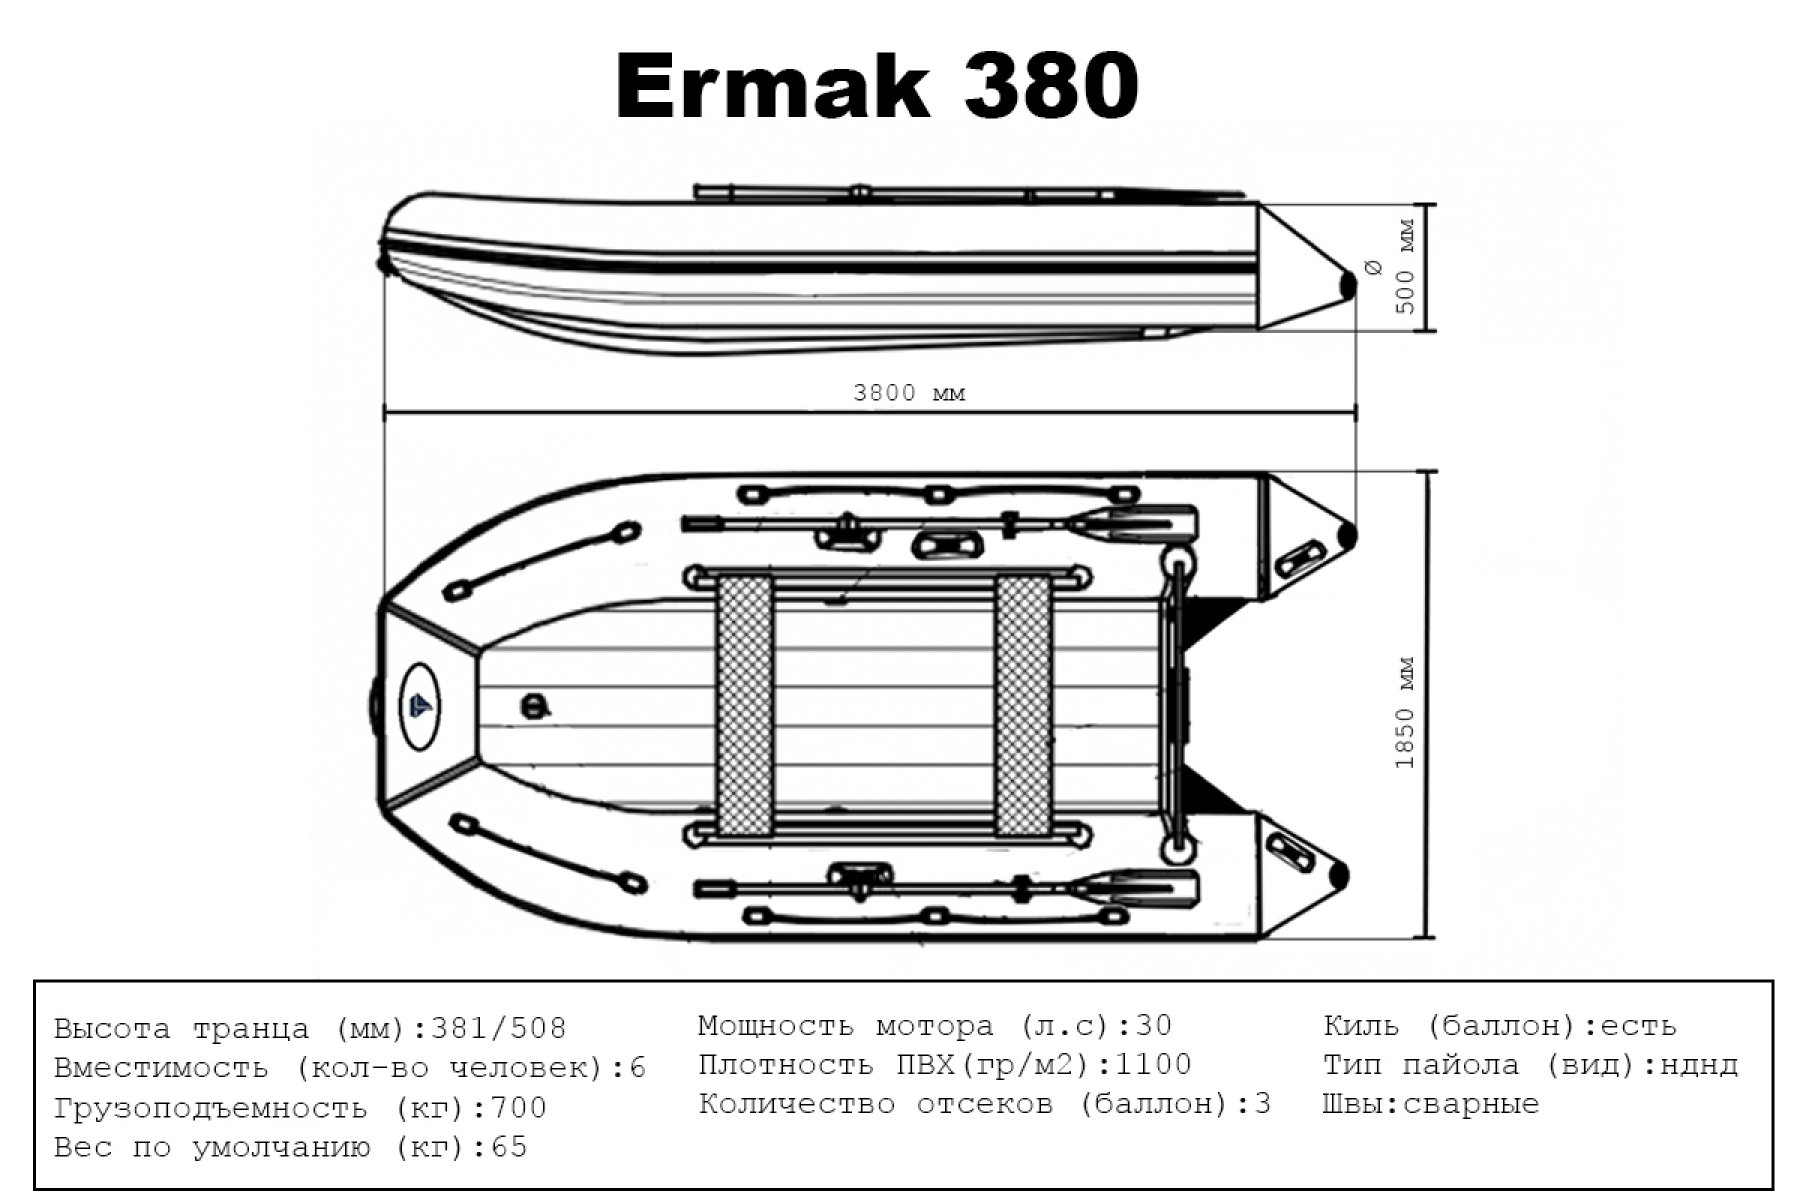 Big Boat Ермак 380